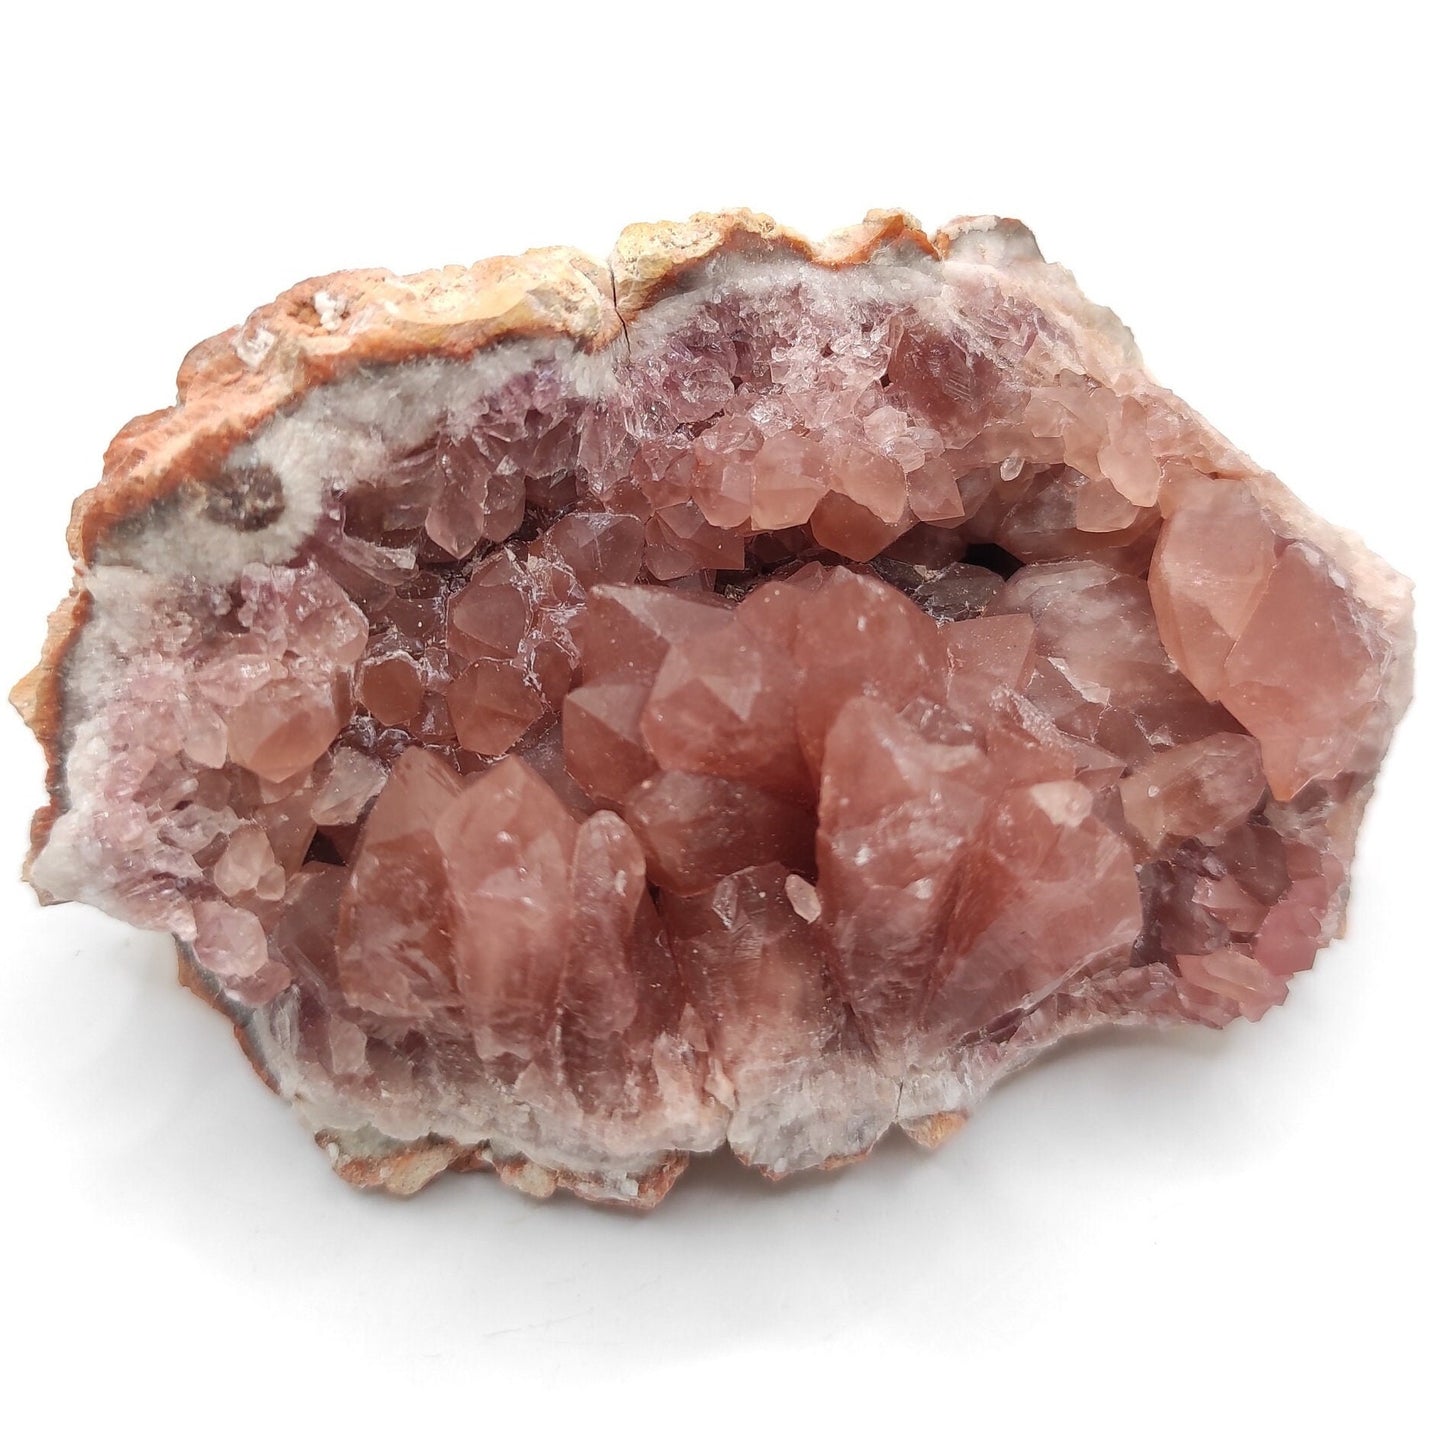 221g Pink Amethyst Geode - Neuquén, Argentina - Natural Raw Pink Amethyst Crystal - Pink Amethyst Geode Cluster - Crystallized Pink Amethyst